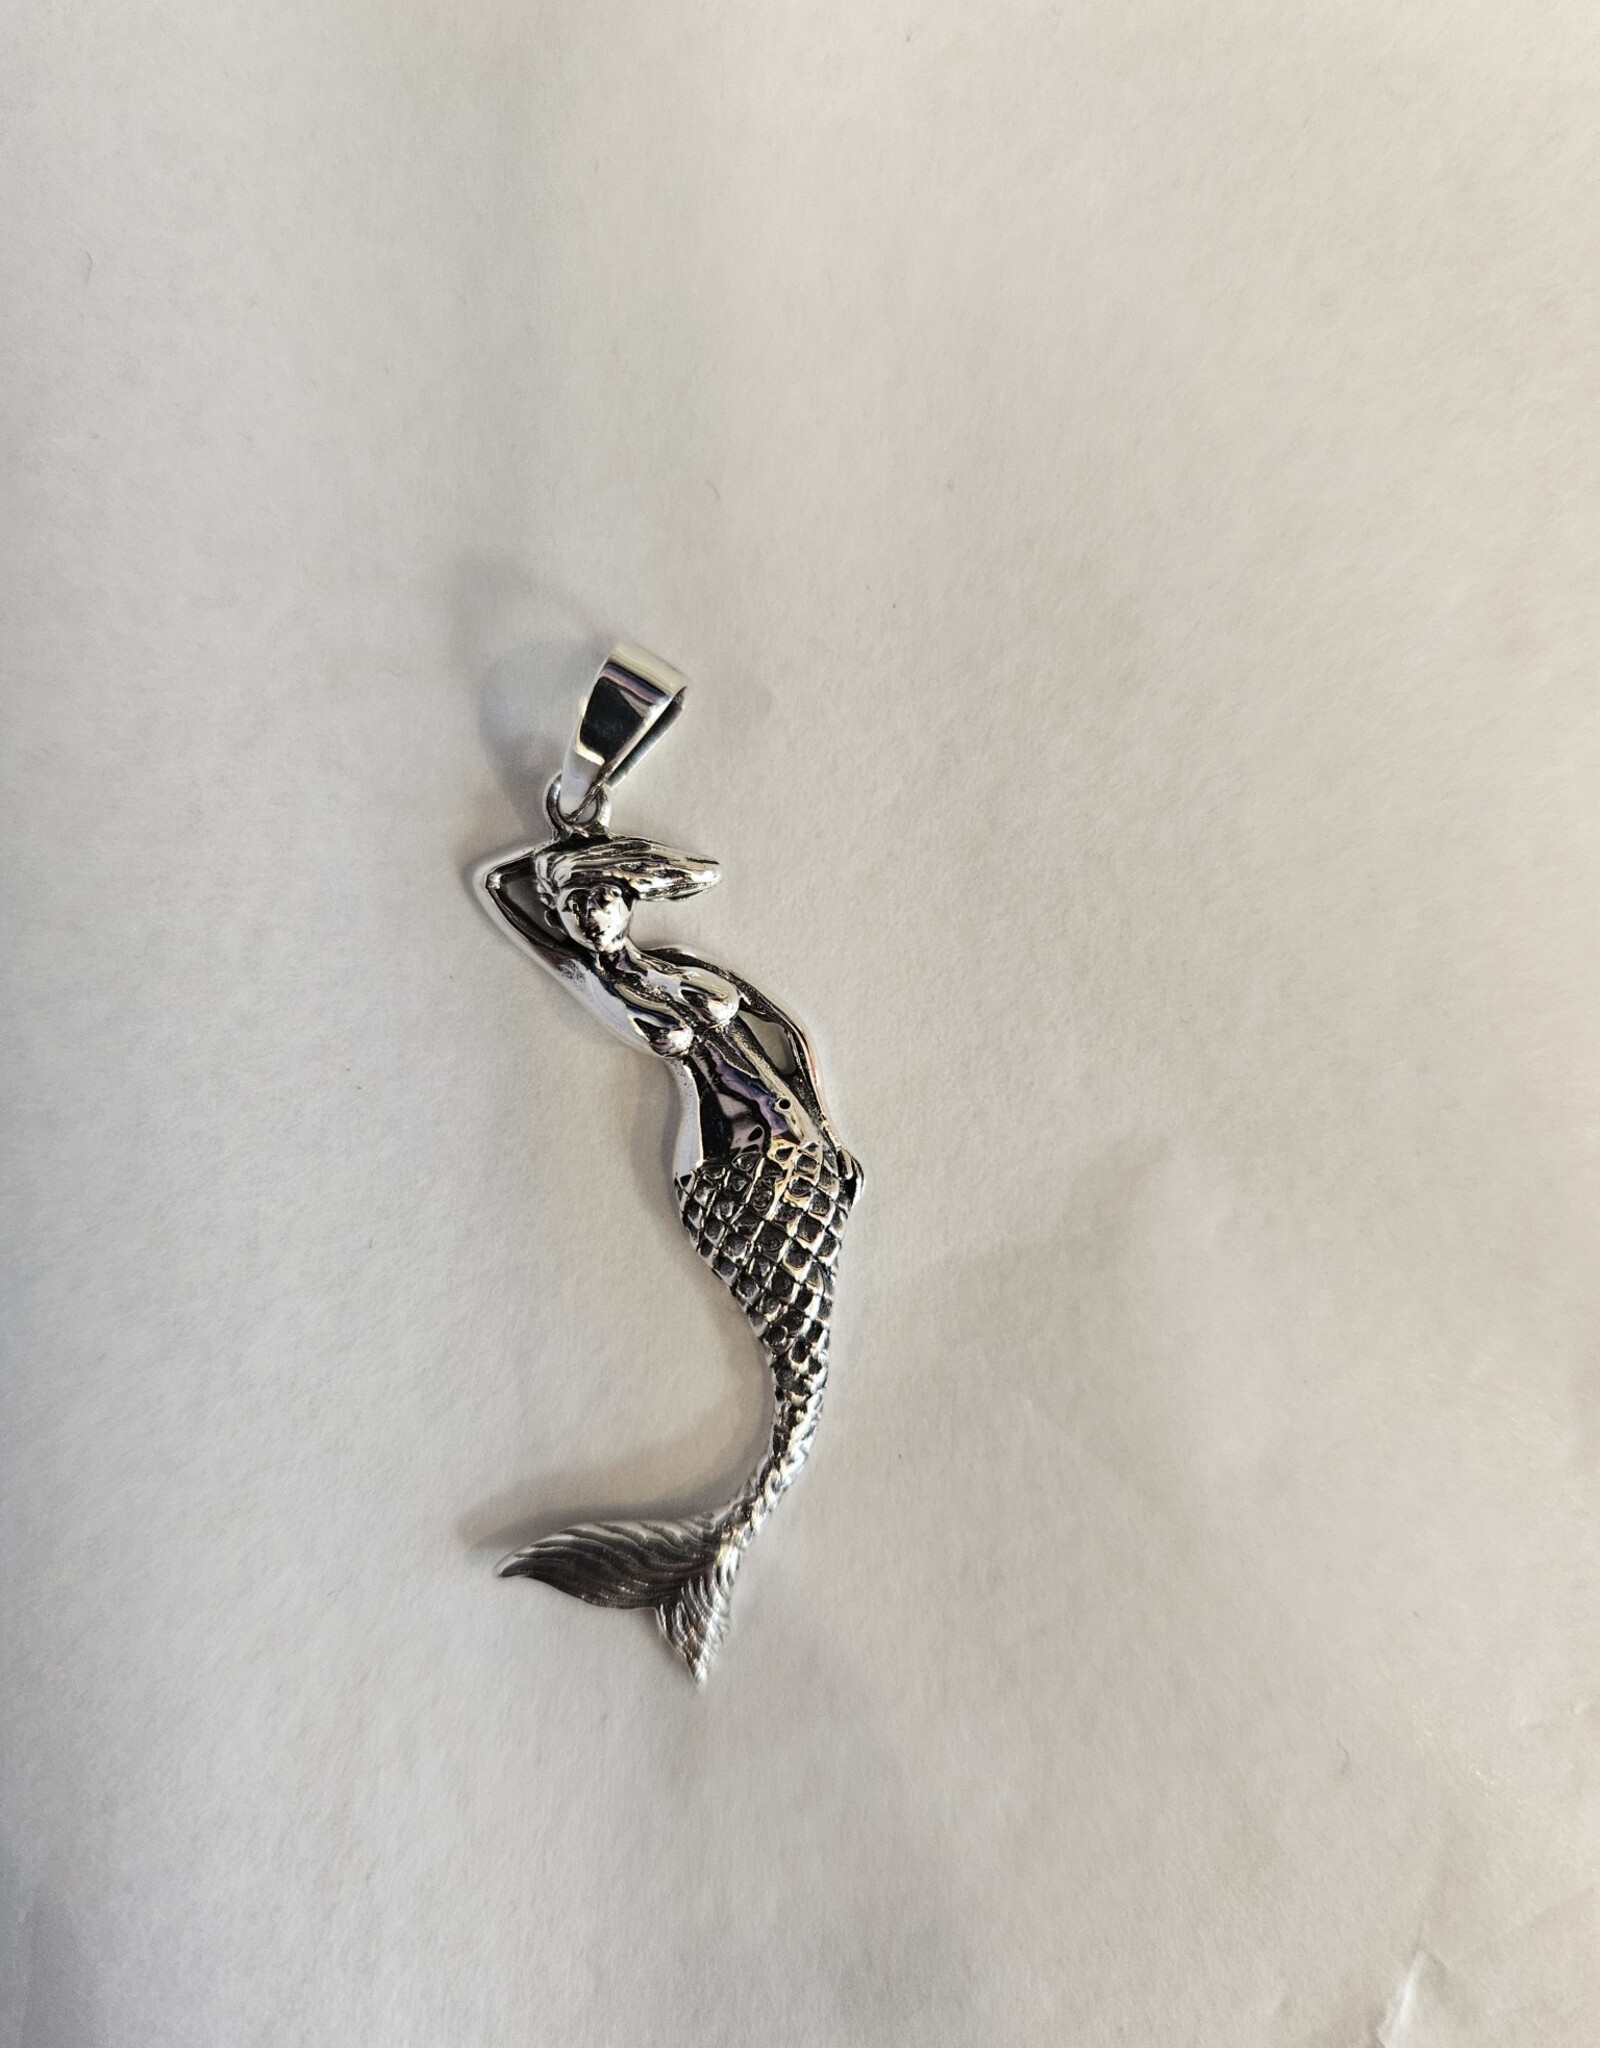 Mermaid Pendant Sterling Silver